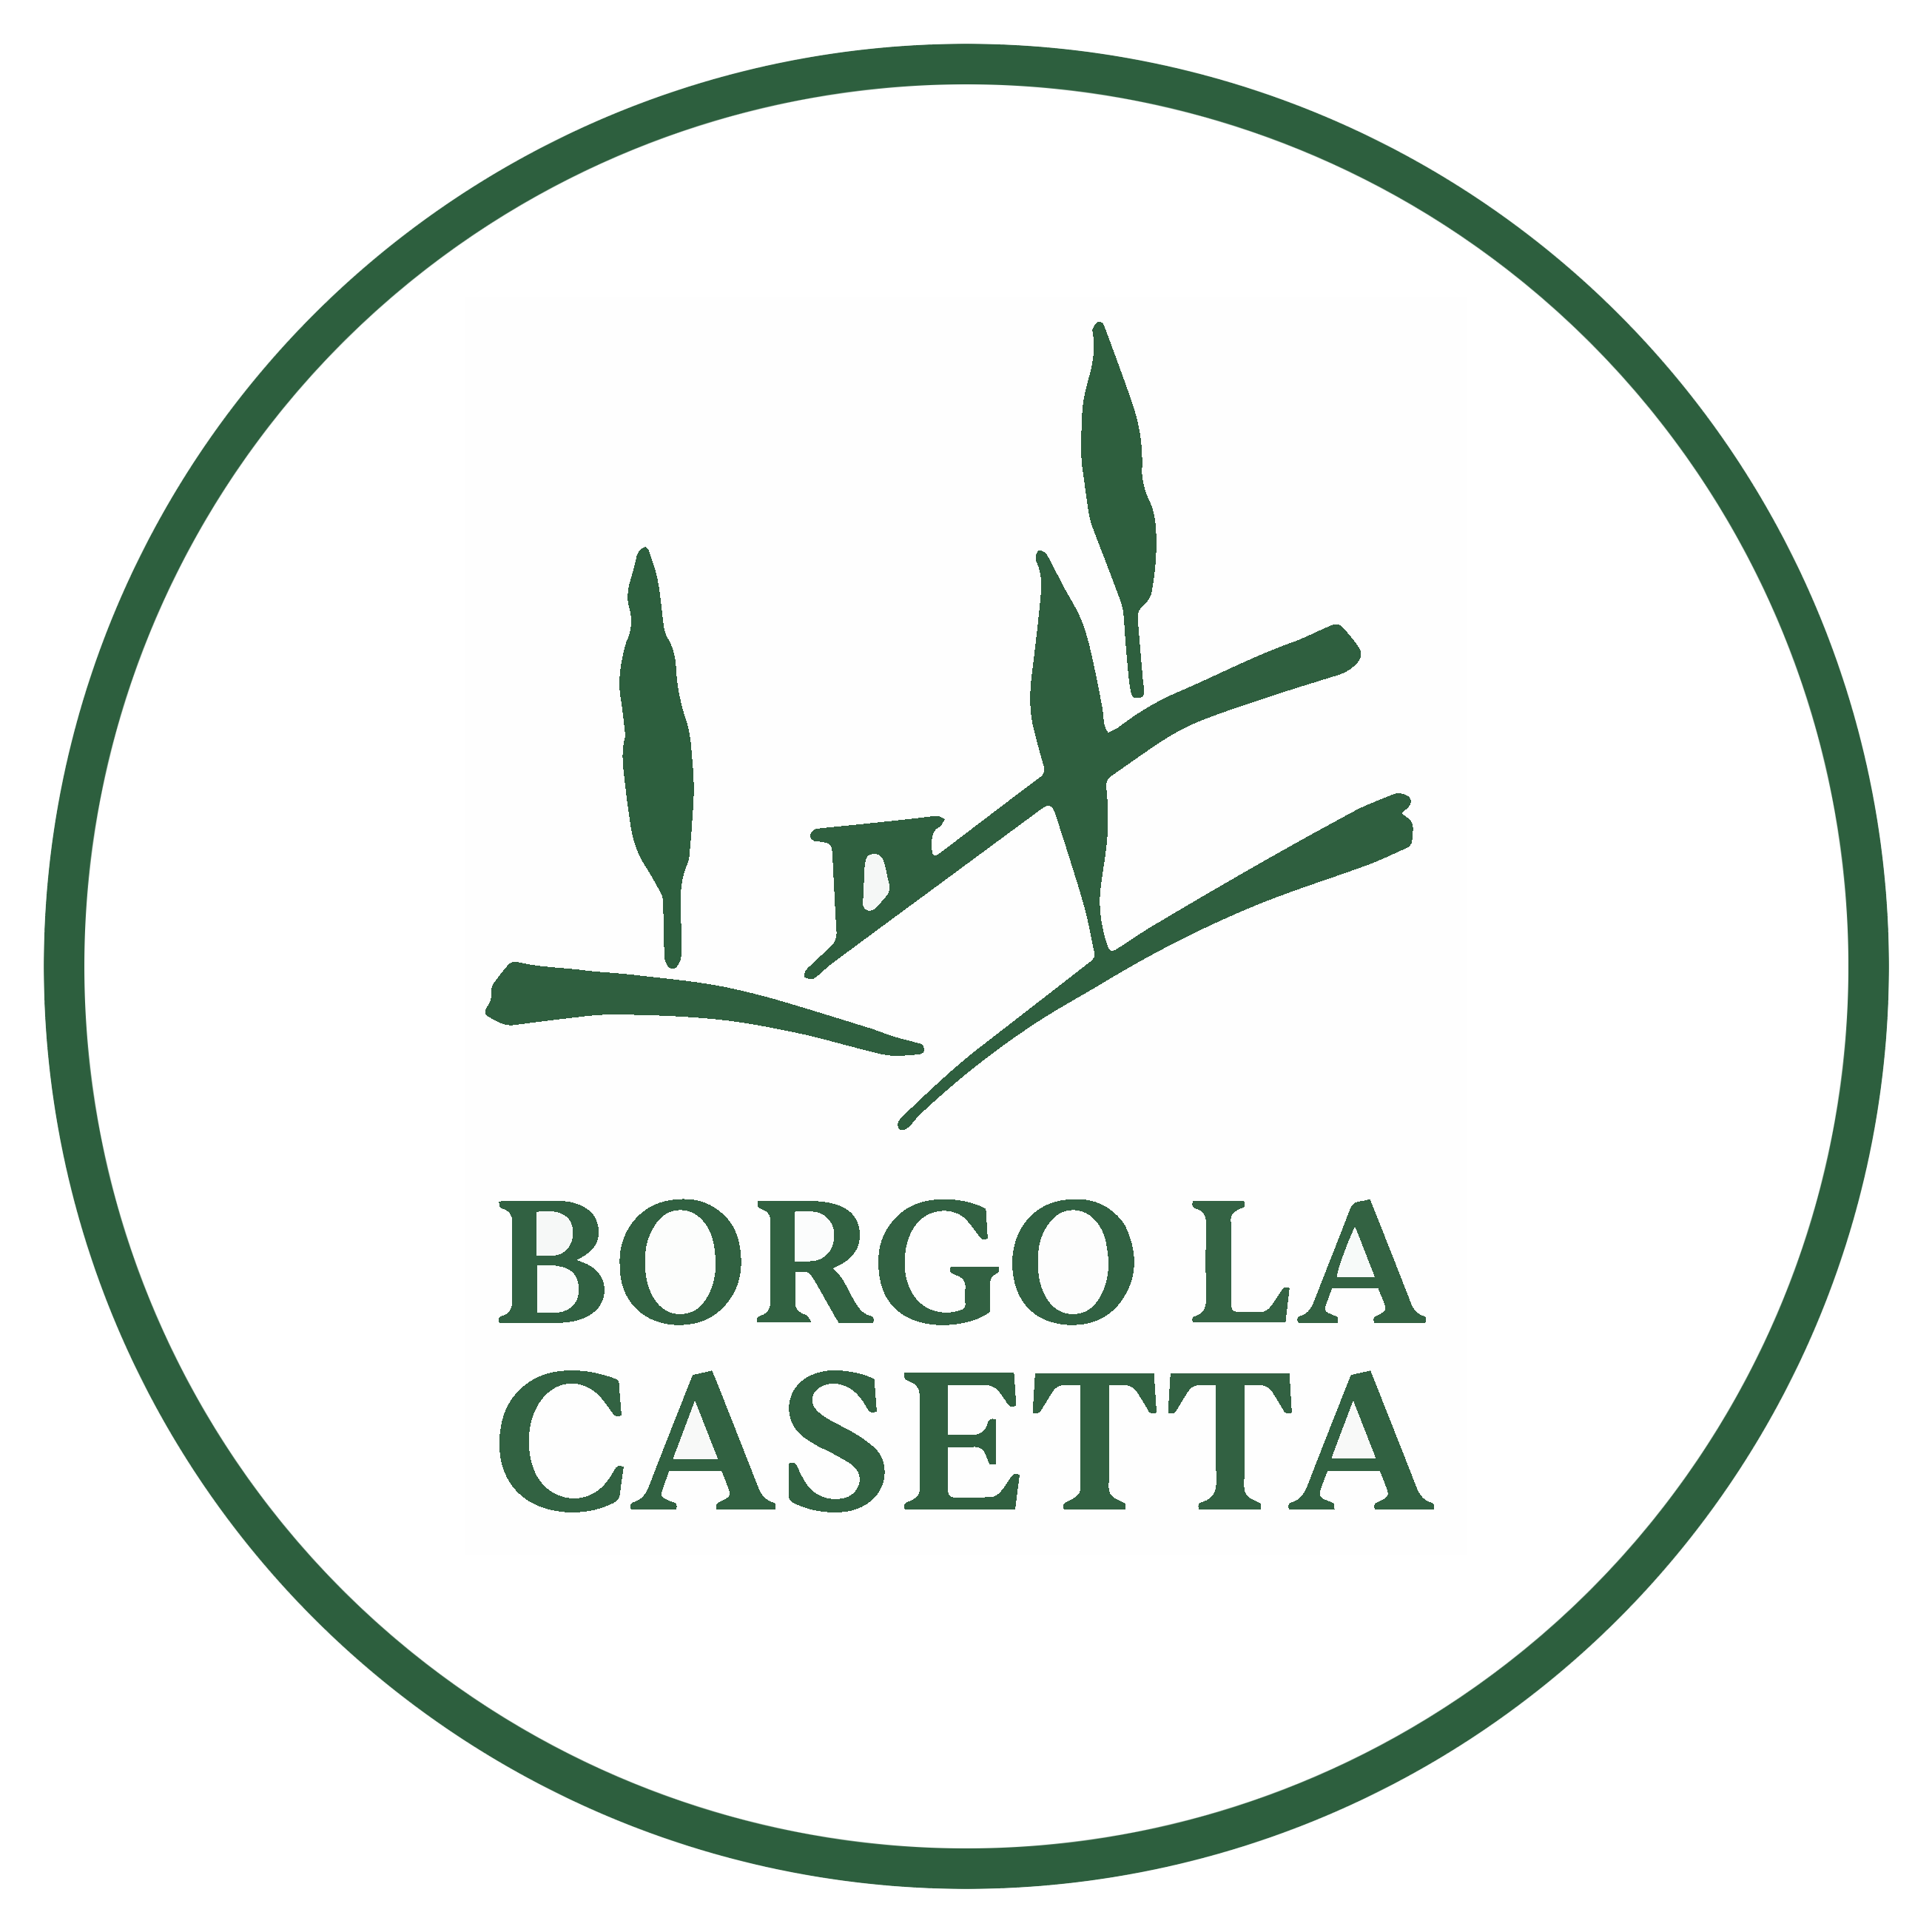 Borgo La Casetta